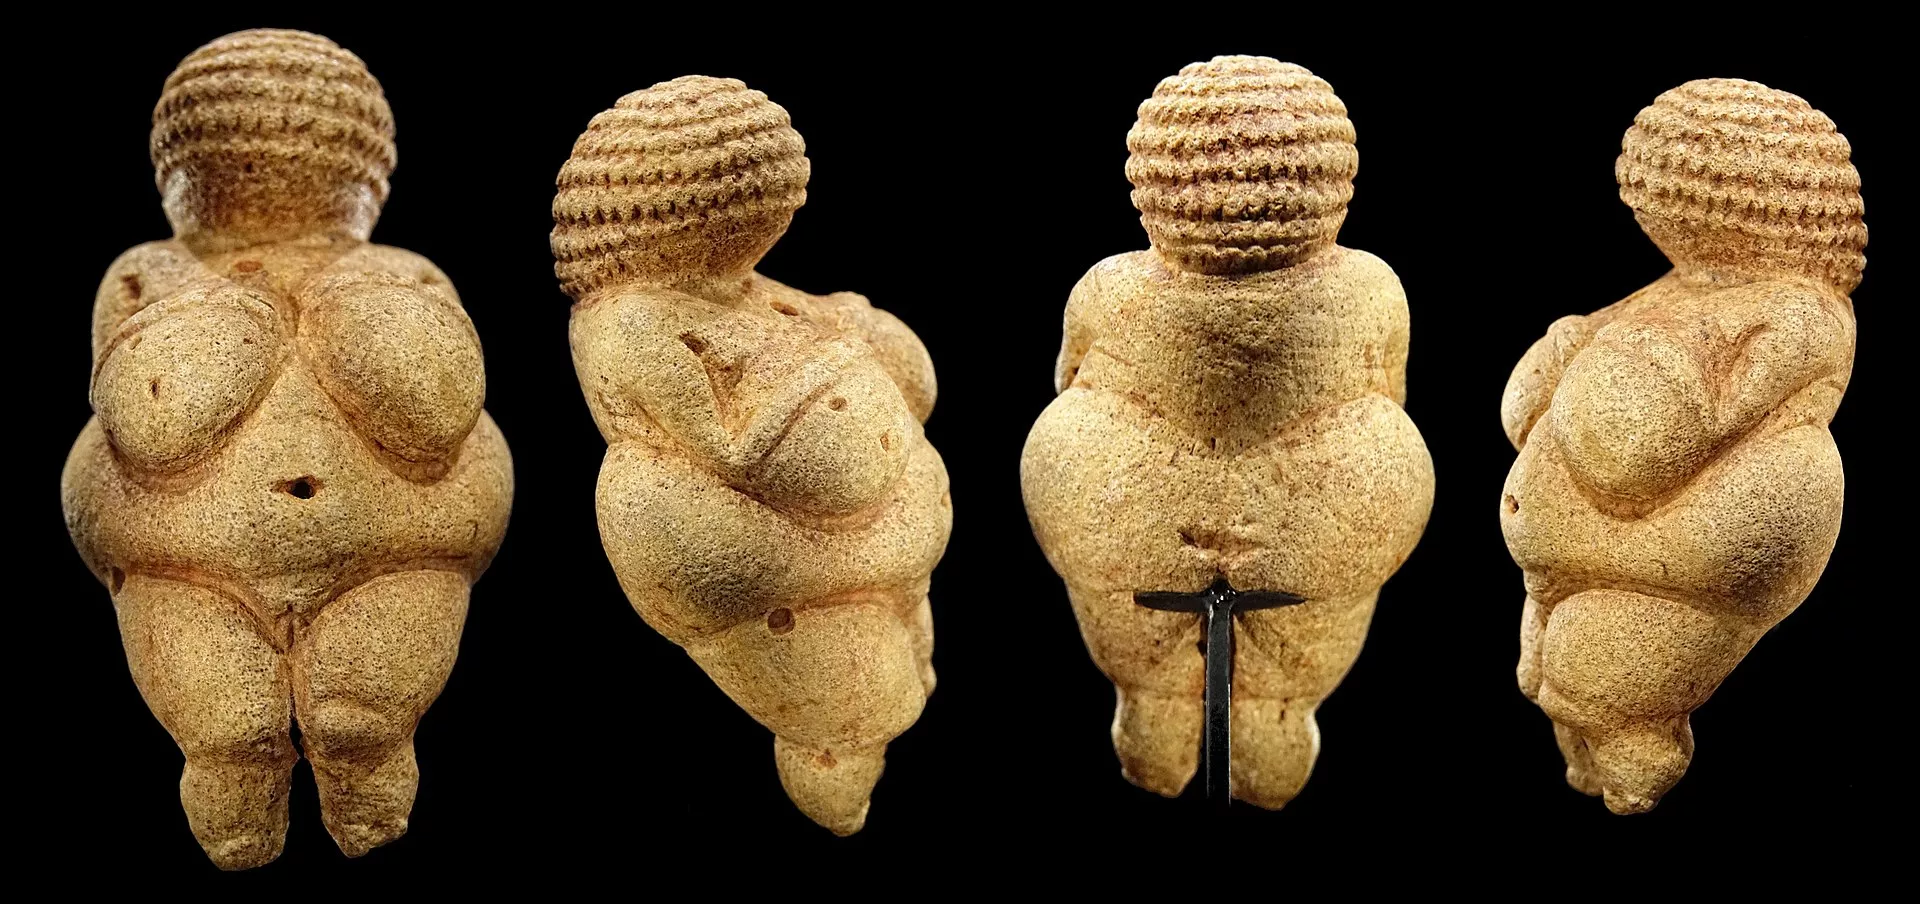 La venus de Willendorf és, probablement, la figureta paleolítica més coneguda d’Europa. És, també, la que presenta uns trets més arquetípics